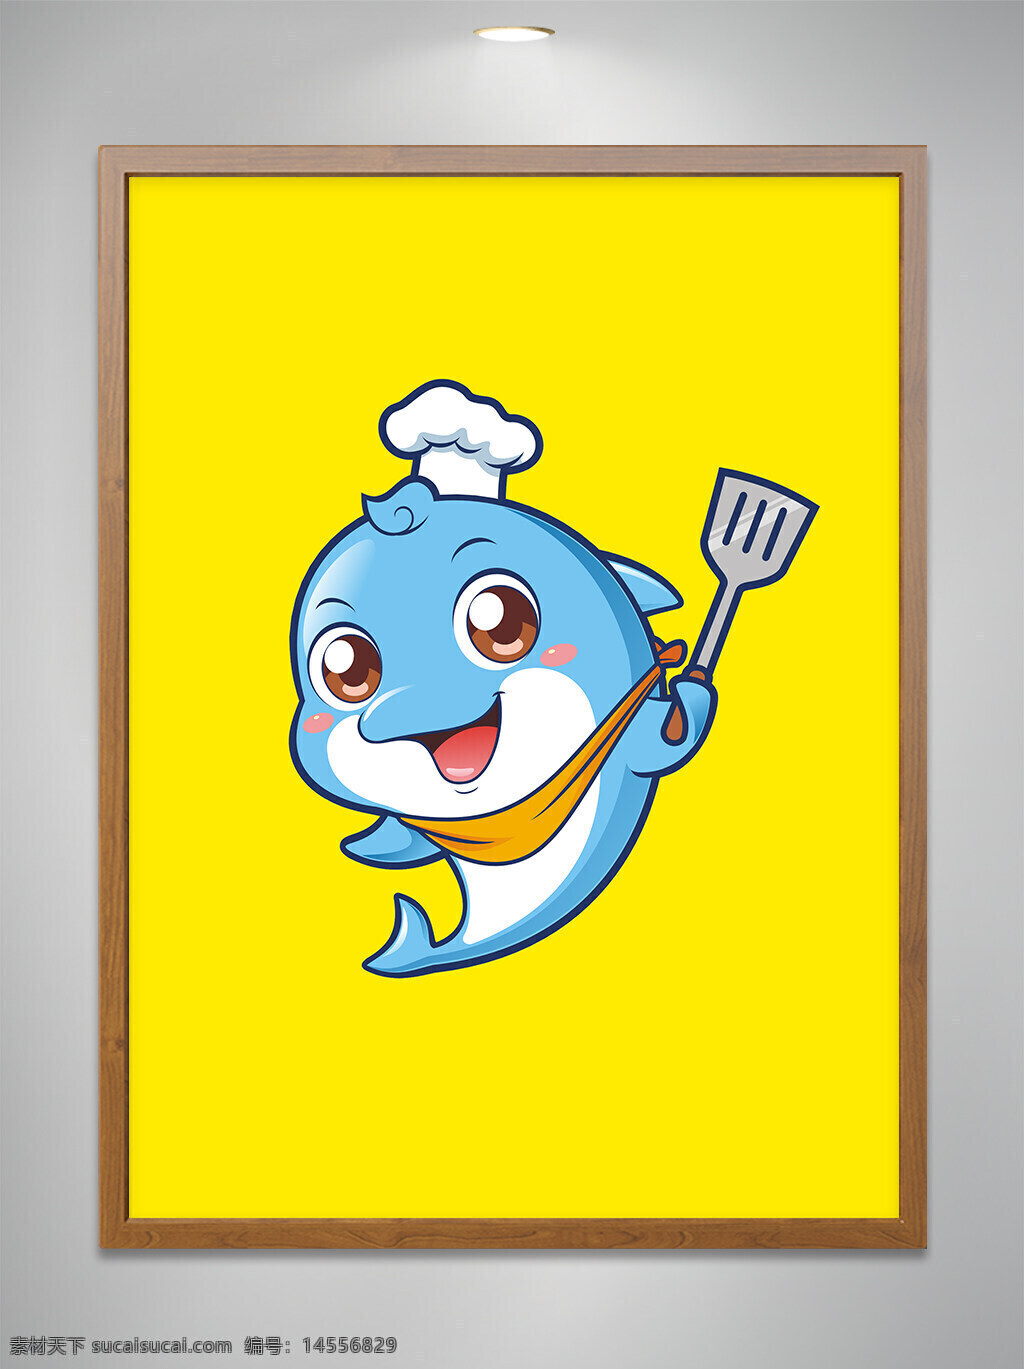 卡通原创 卡通吉祥物 卡通动物 卡通可爱小海豚 卡通可爱小海豚厨师 卡通可爱小海豚厨师拿锅铲 餐饮 cdr矢量图